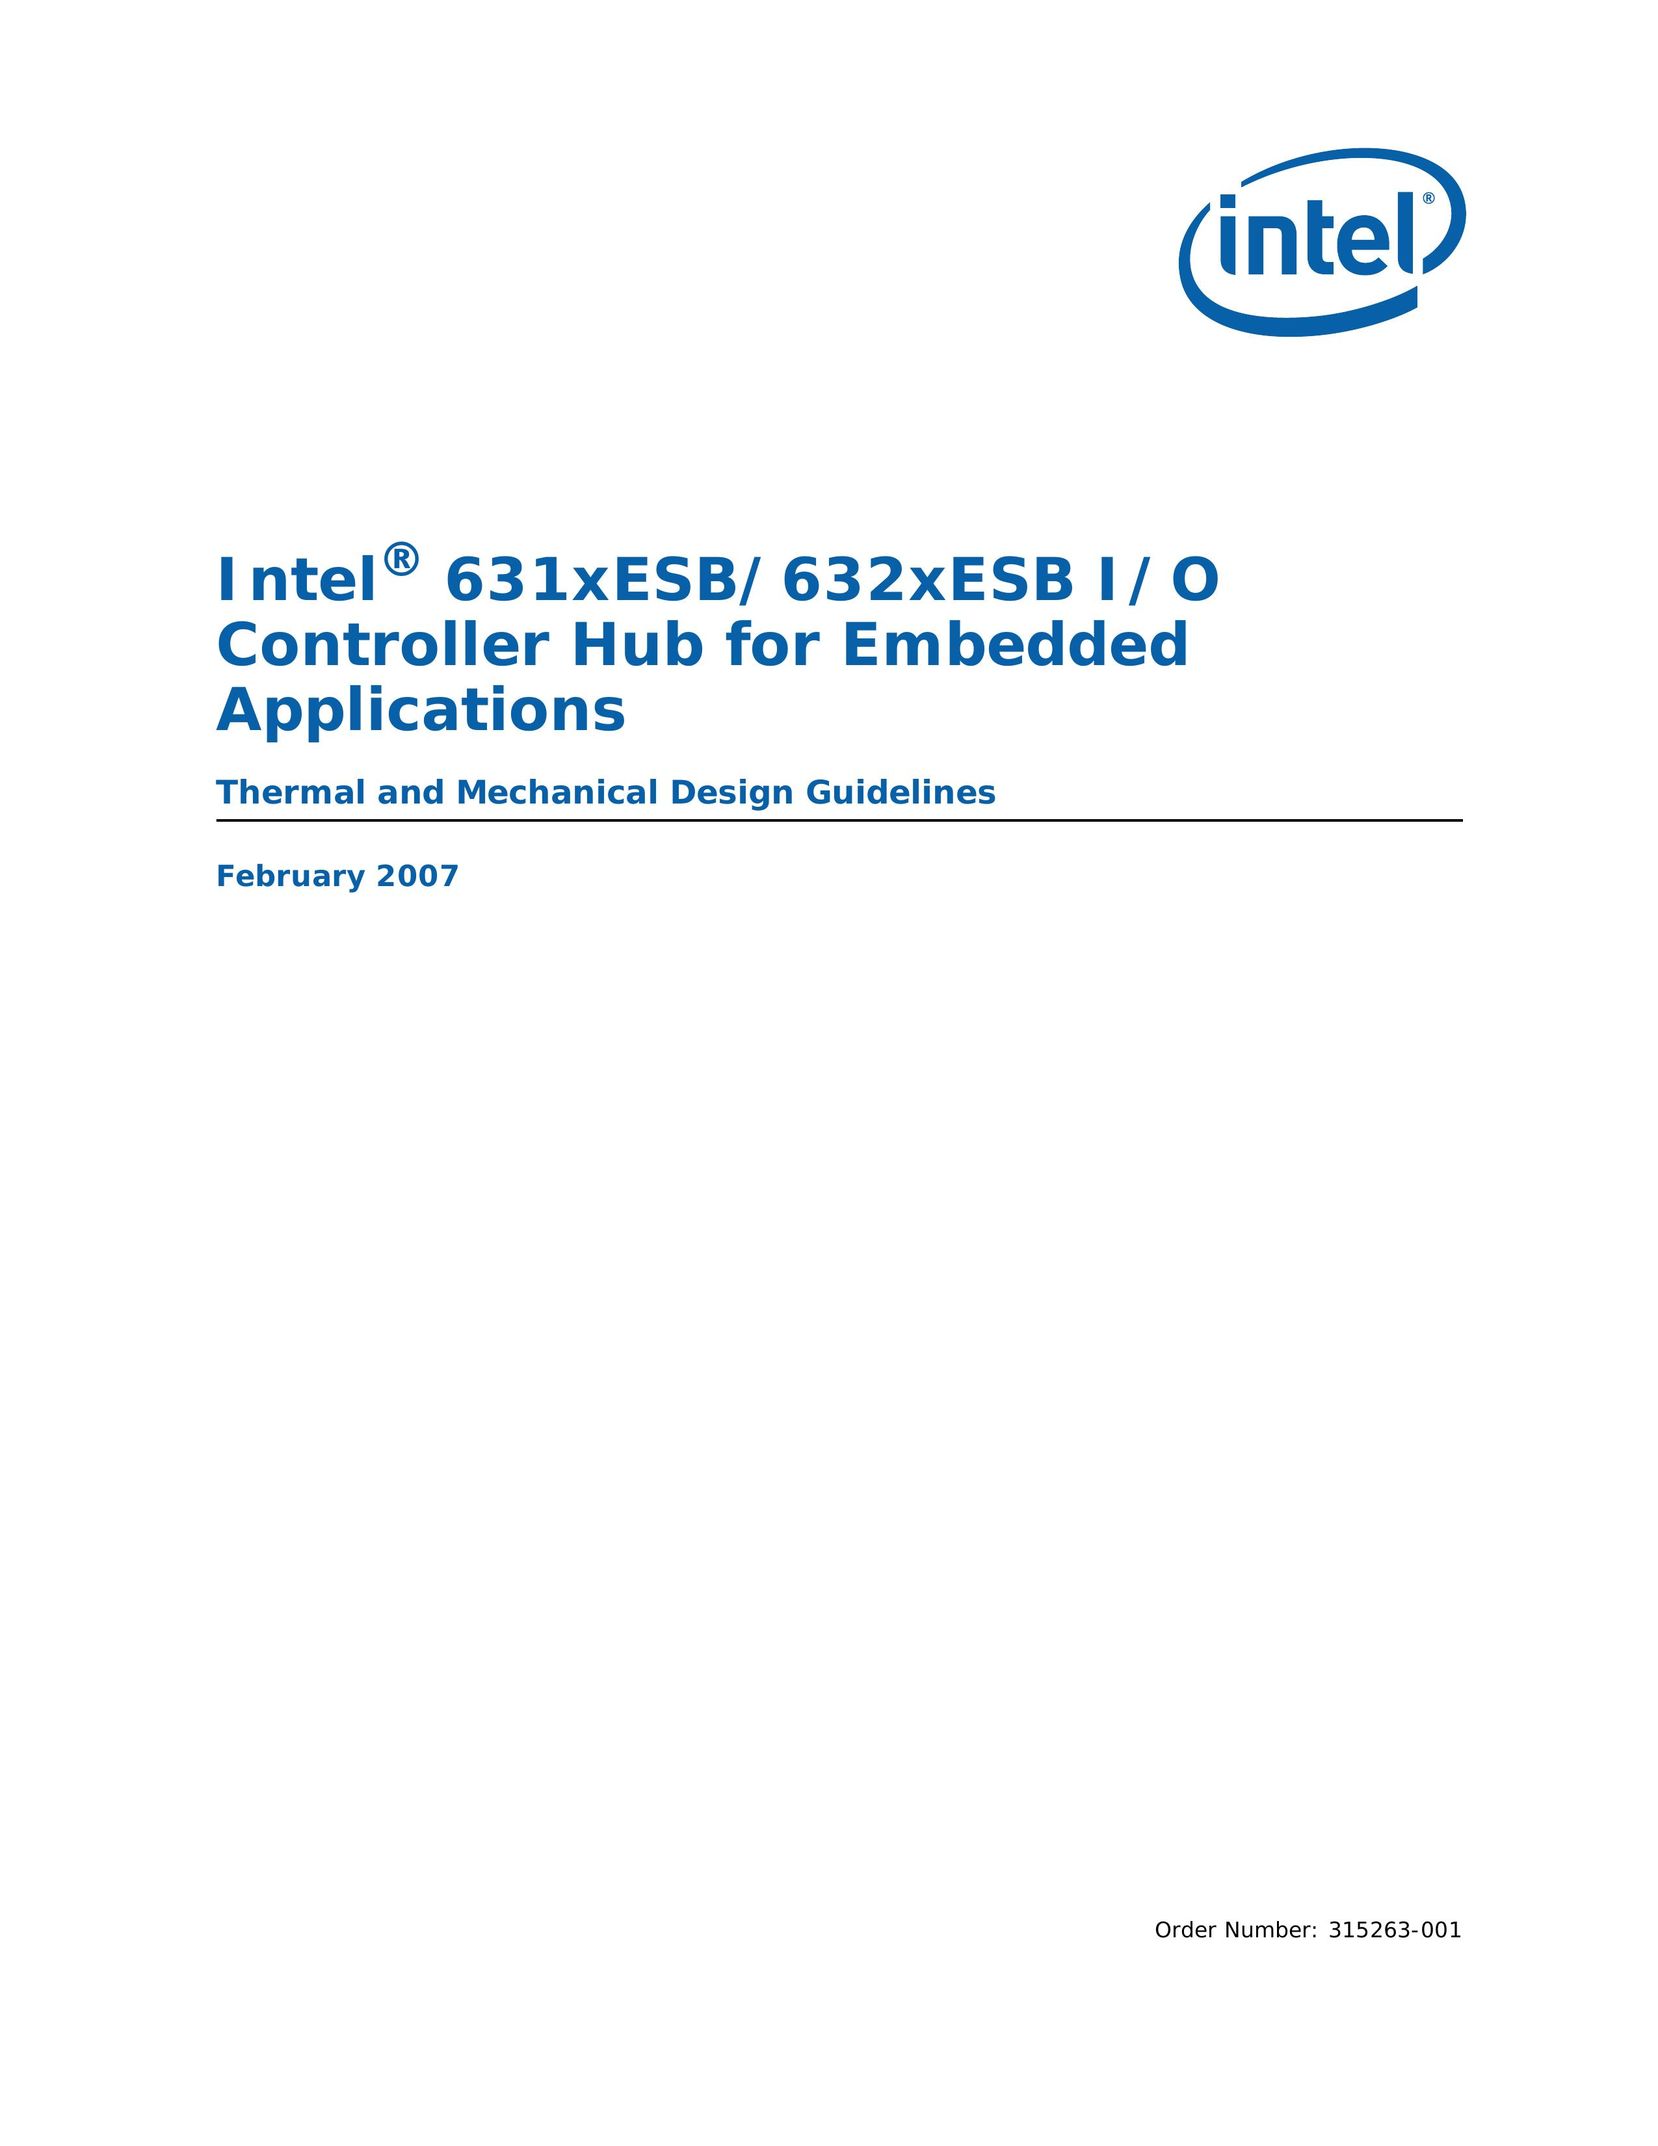 Intel 632xESB Computer Hardware User Manual